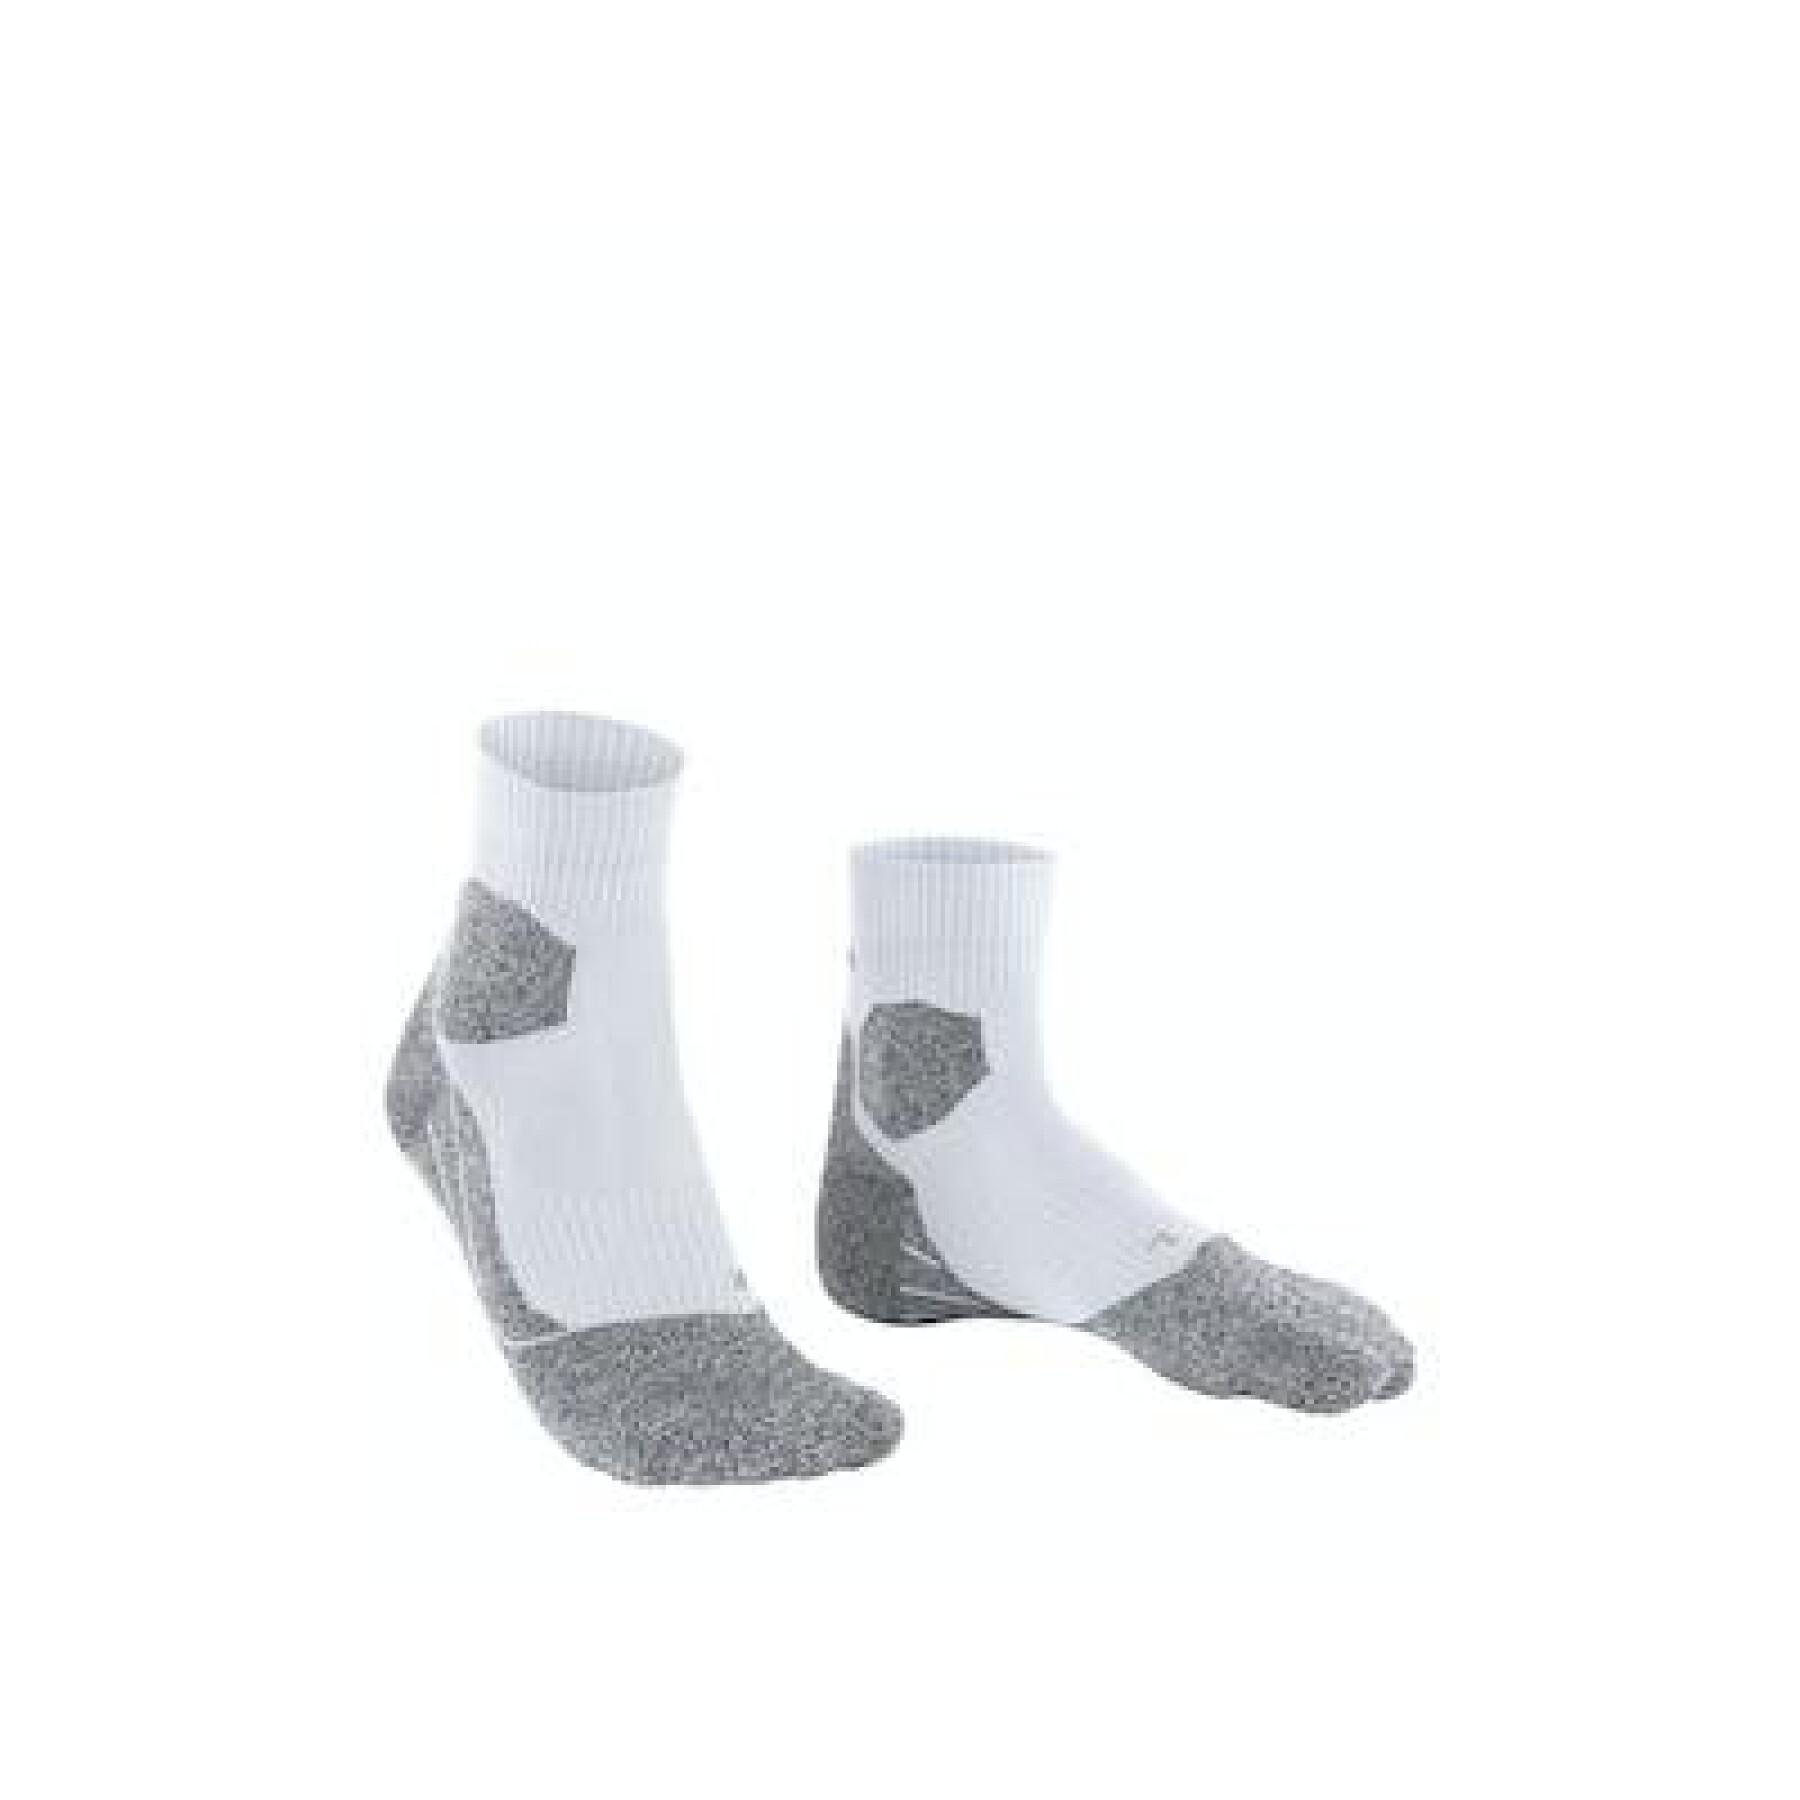 Women's socks Falke RU Trail Grip - Socks - Women's wear